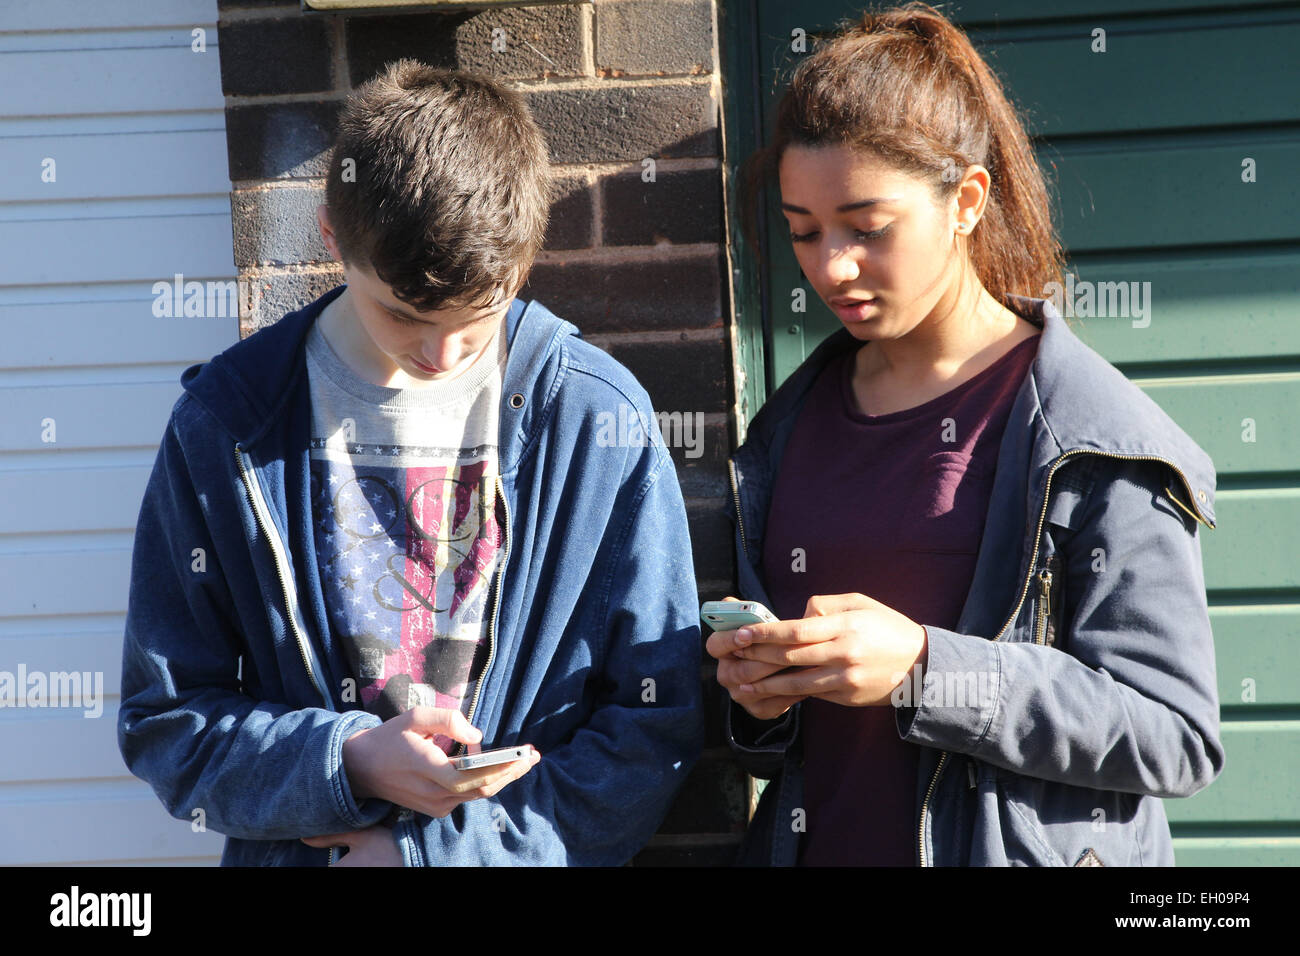 Jugendliche, die Benutzung von Mobiltelefonen - Modell veröffentlicht Stockfoto